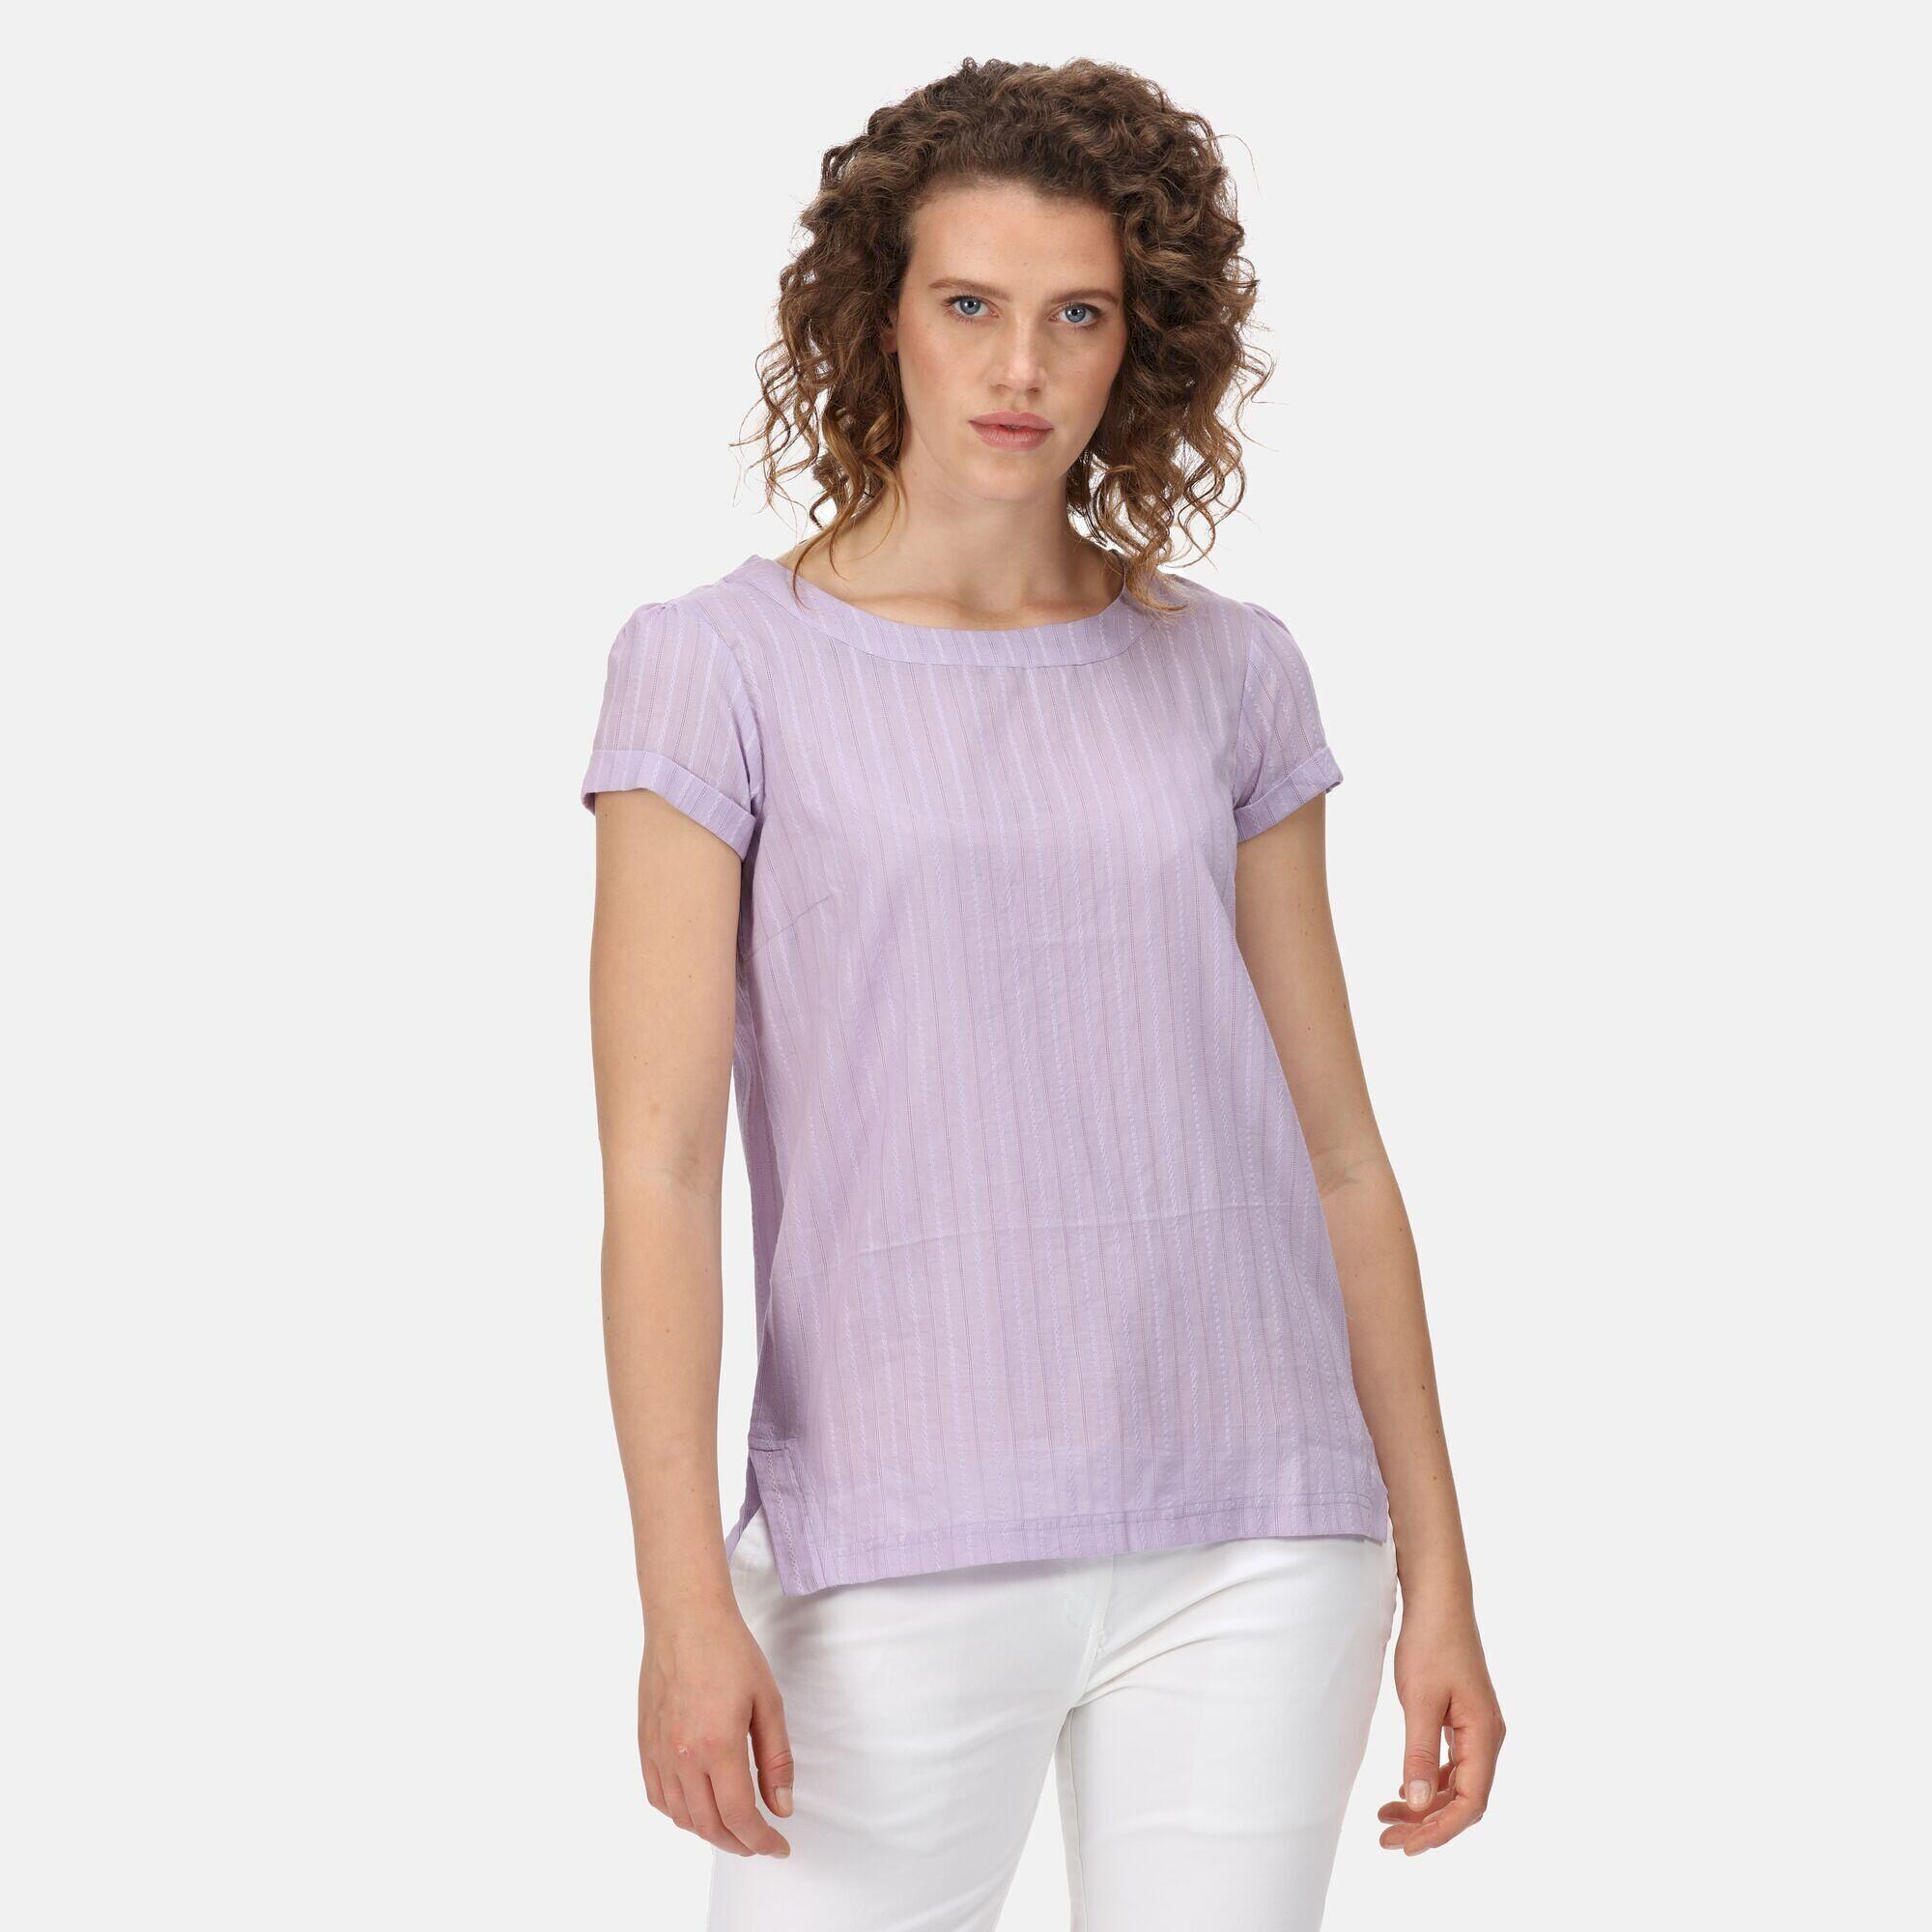 Womens/Ladies Jaelynn Dobby Cotton TShirt (Pastel Lilac) 4/5